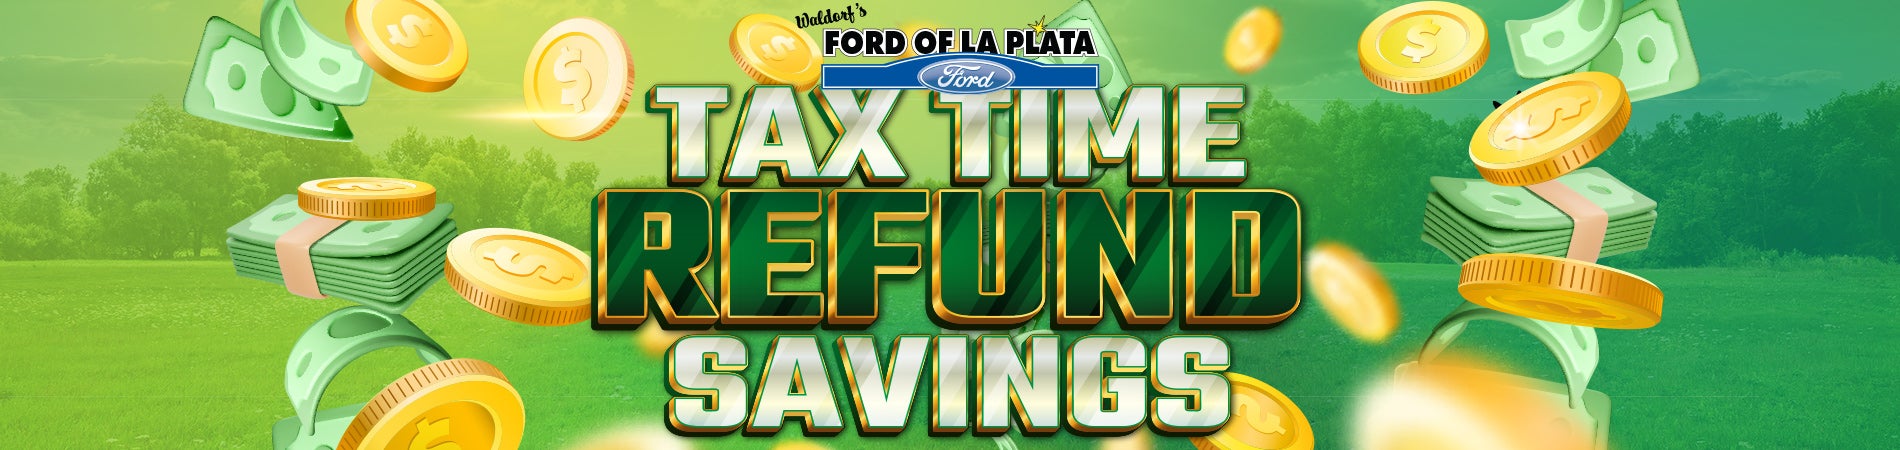 Tax Time Refund Savings